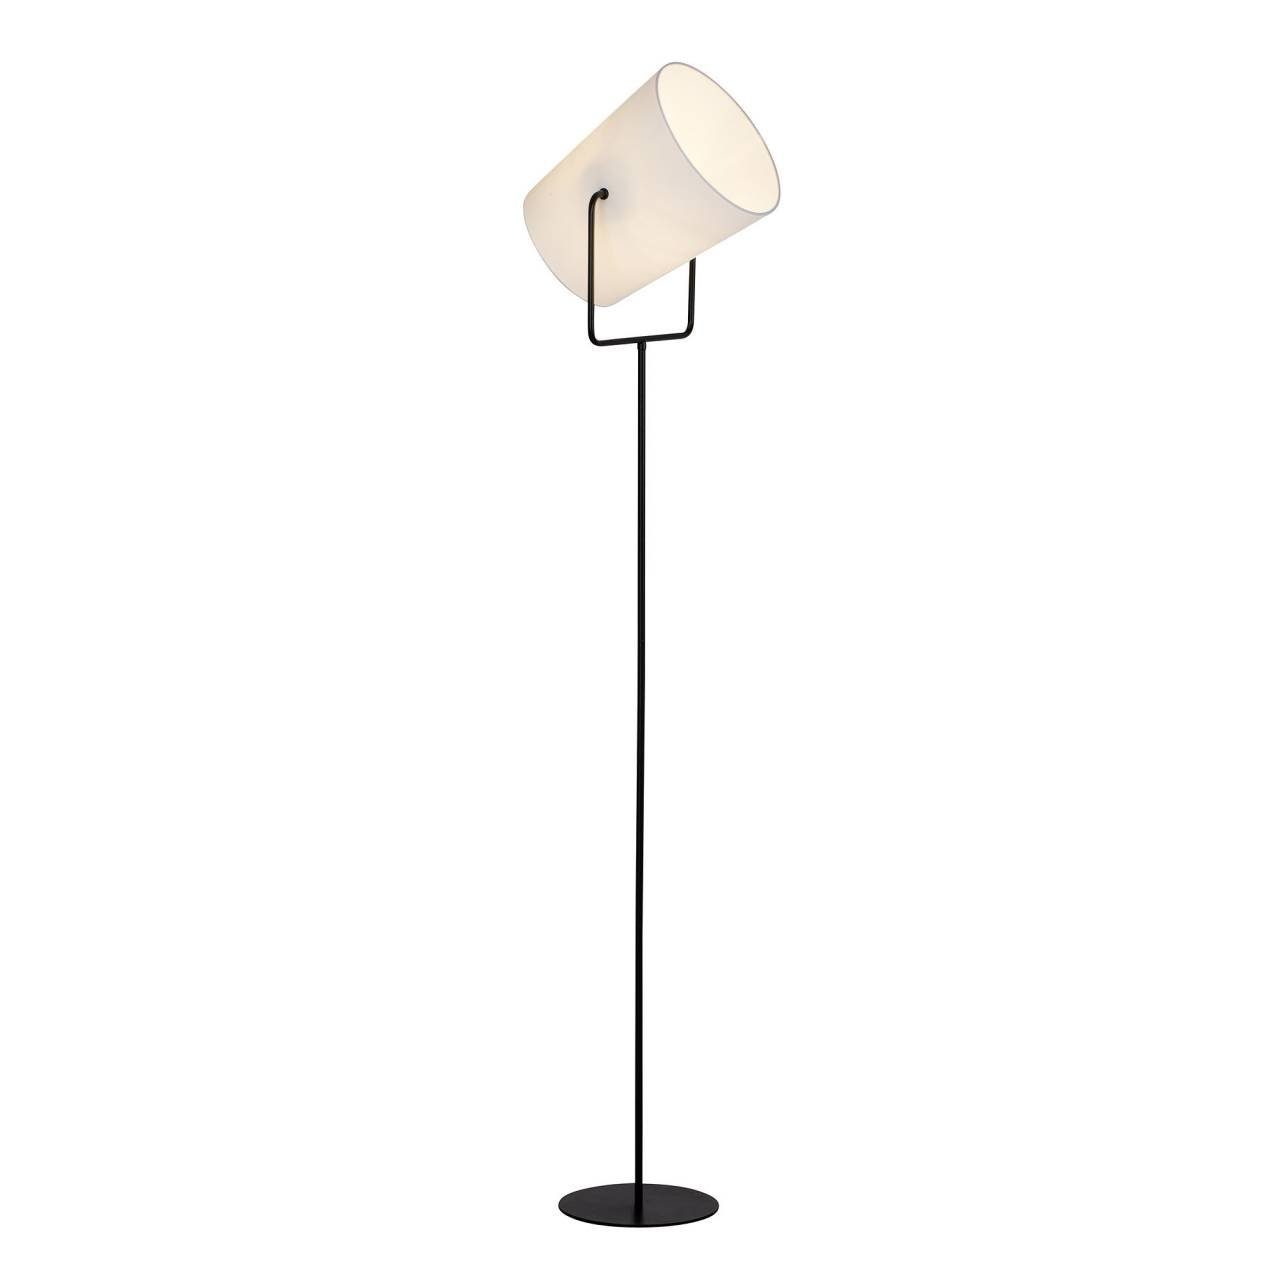 Stehlampe E27, geeign Bucket, Brilliant 1flg Bucket Lampe Standleuchte 1x 60W, A60, schwarz/weiß